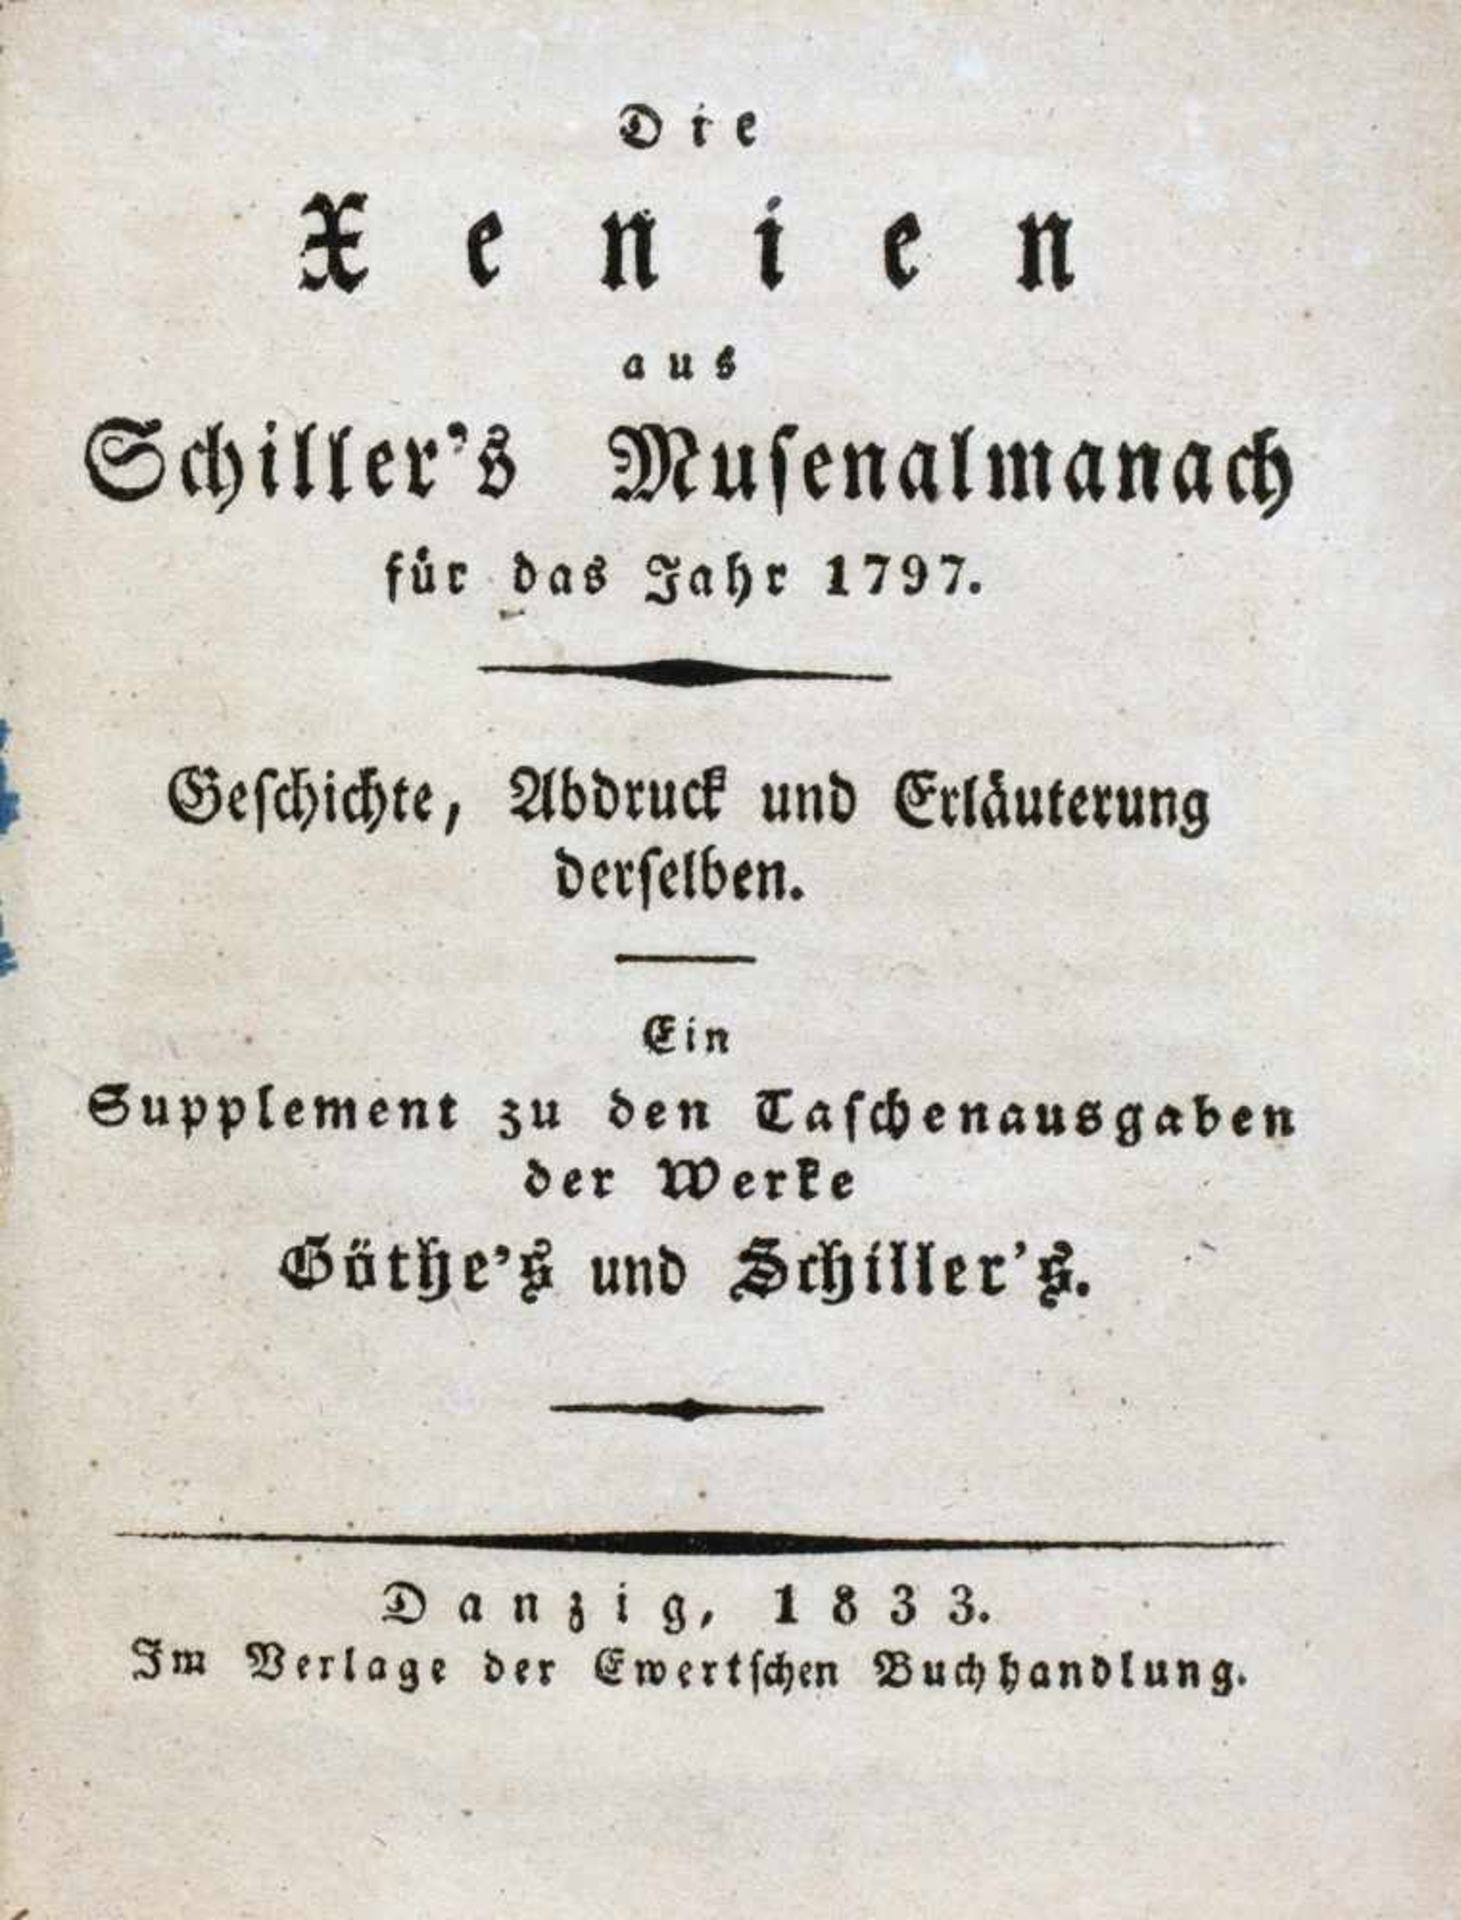 Schillers Xenienalmanach - Musen-Almanach für das Jahr 1797. Herausgegeben von Schiller. Tübingen, - Bild 2 aus 3